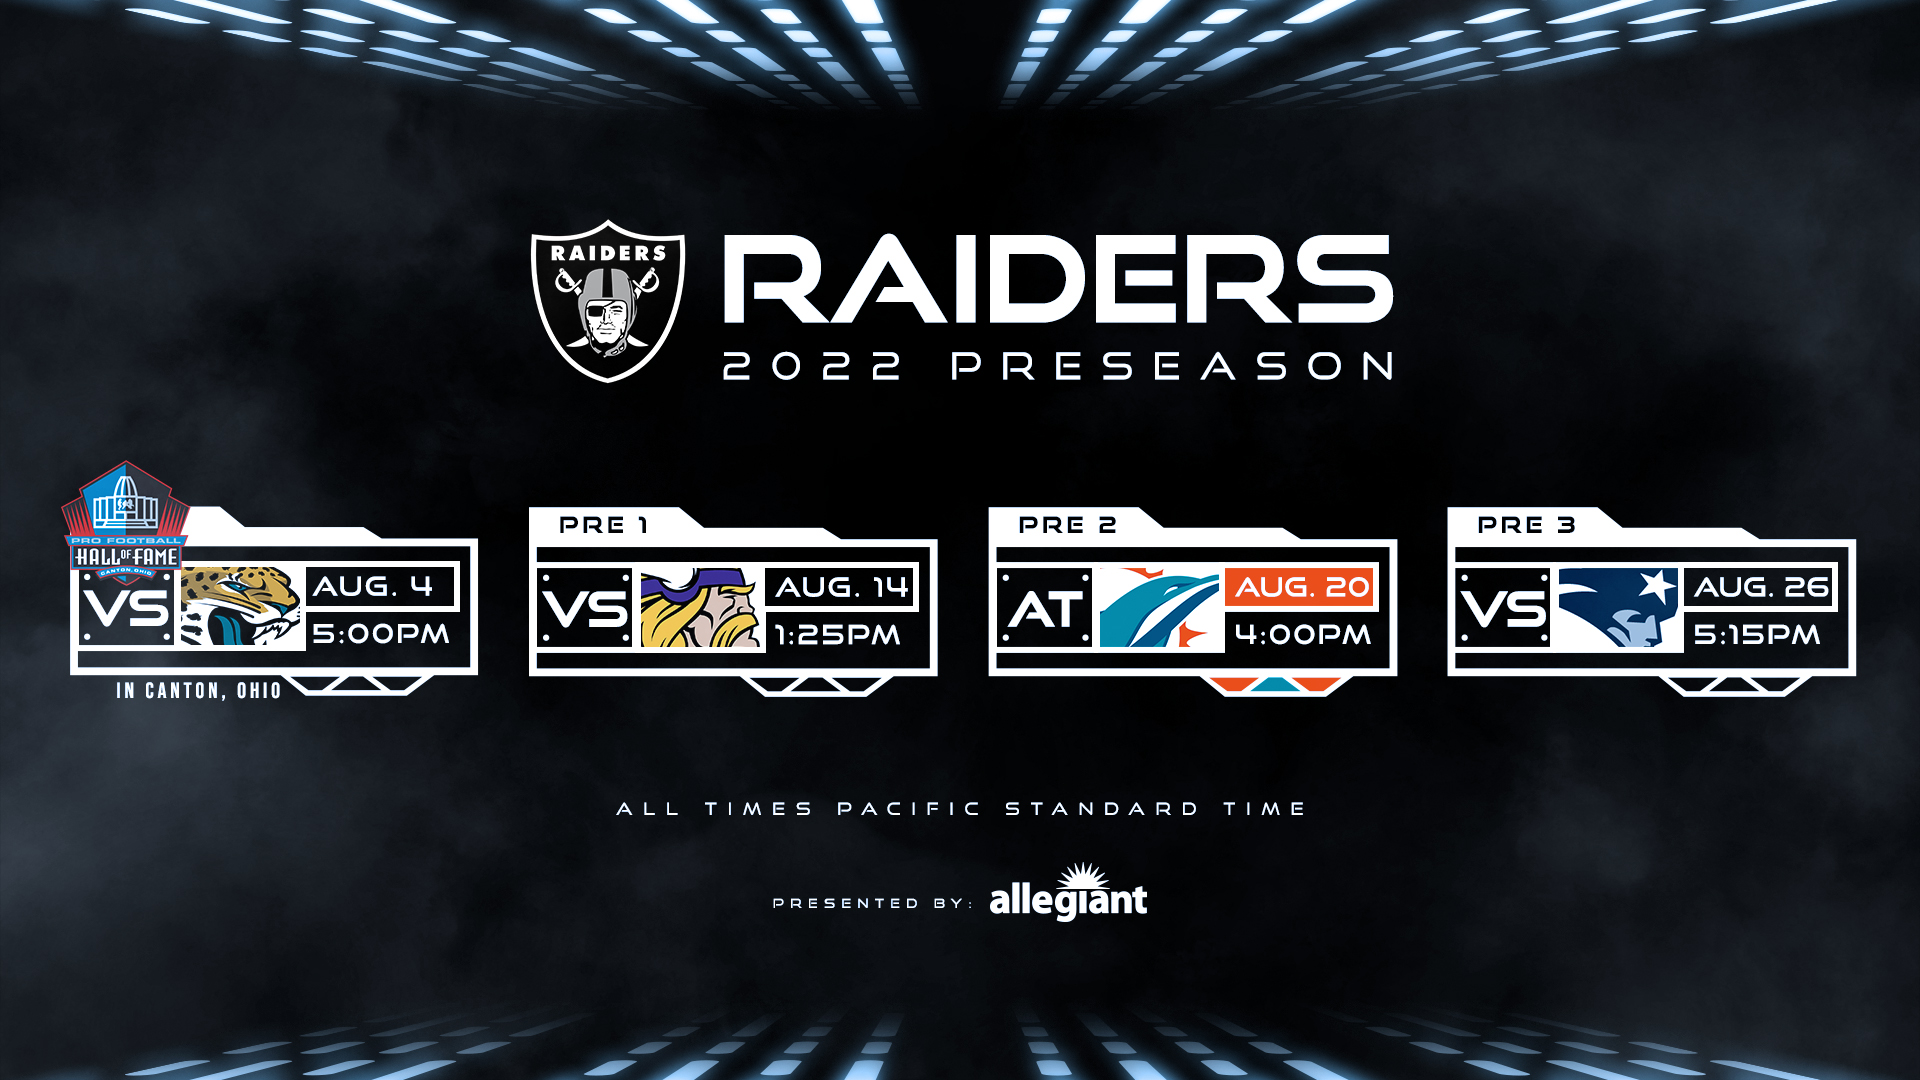 Las Vegas Raiders on X: 'Our 2022 preseason schedule is set 